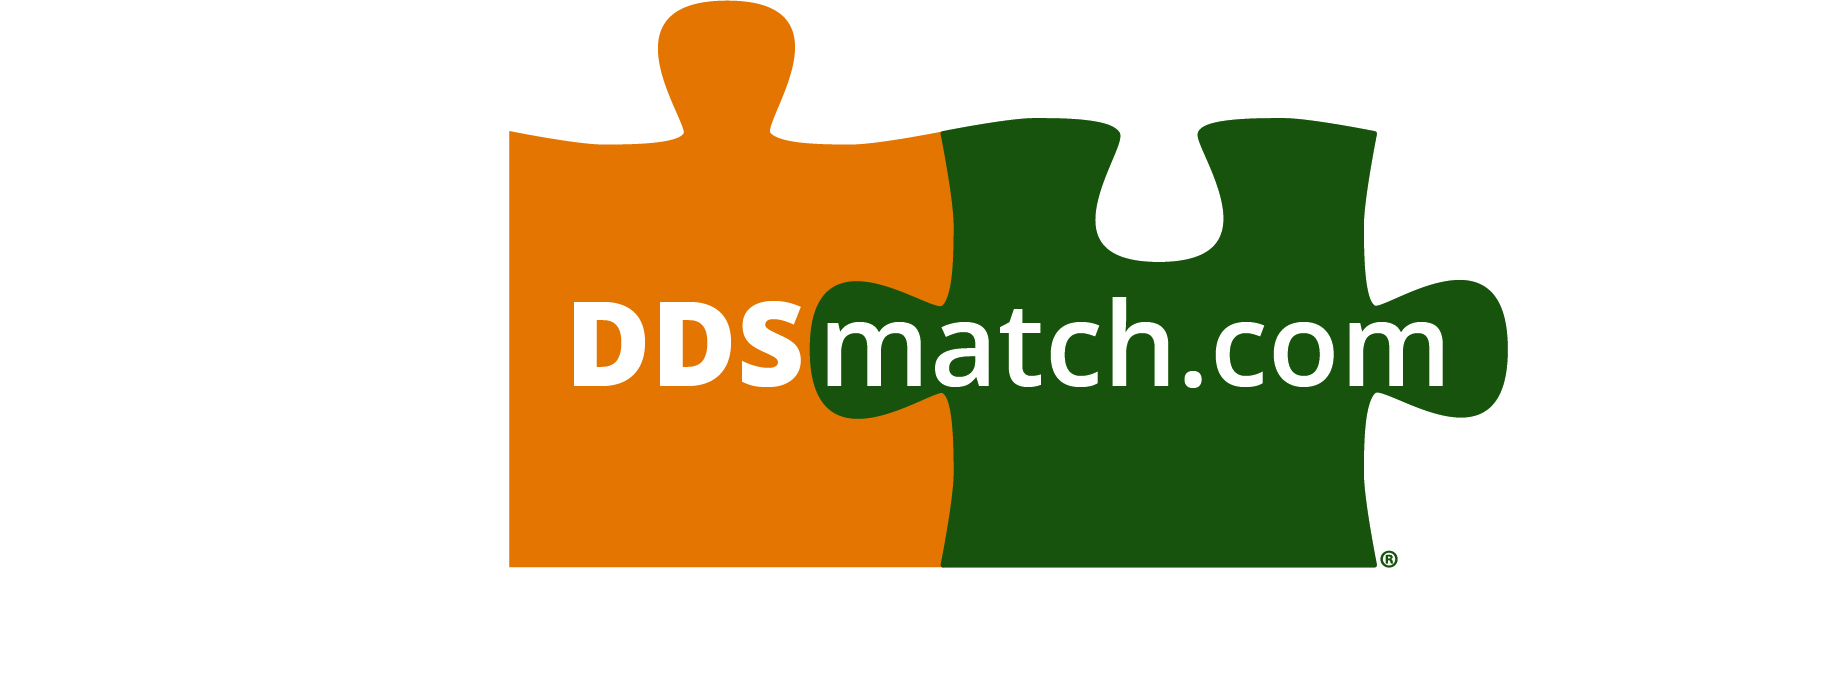 ddsmatch.com - Sheryl Garfinkel Logo